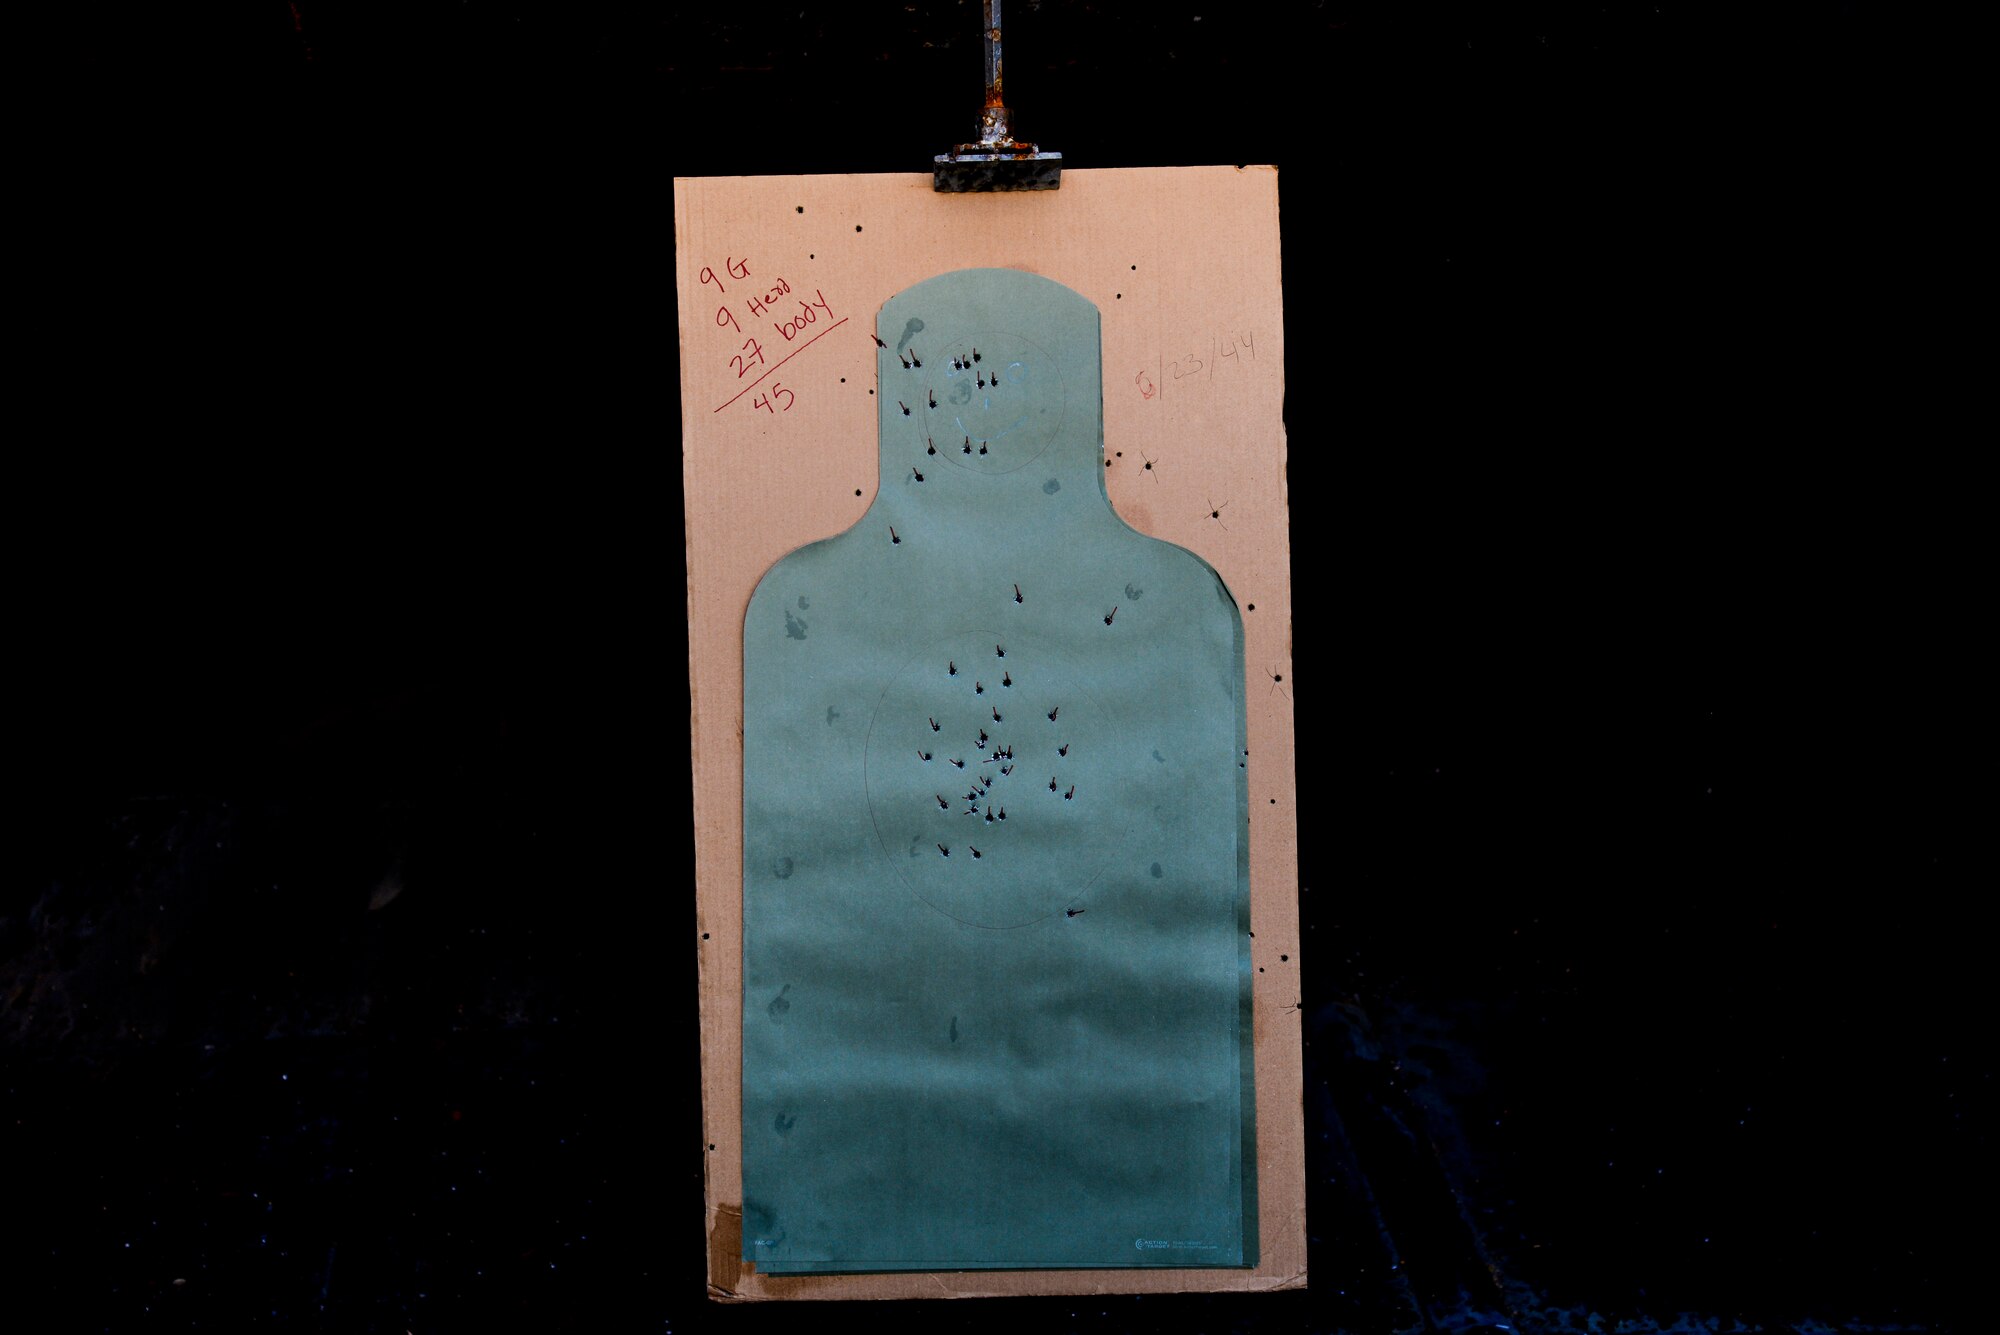 A paper target hangs in a shooting range